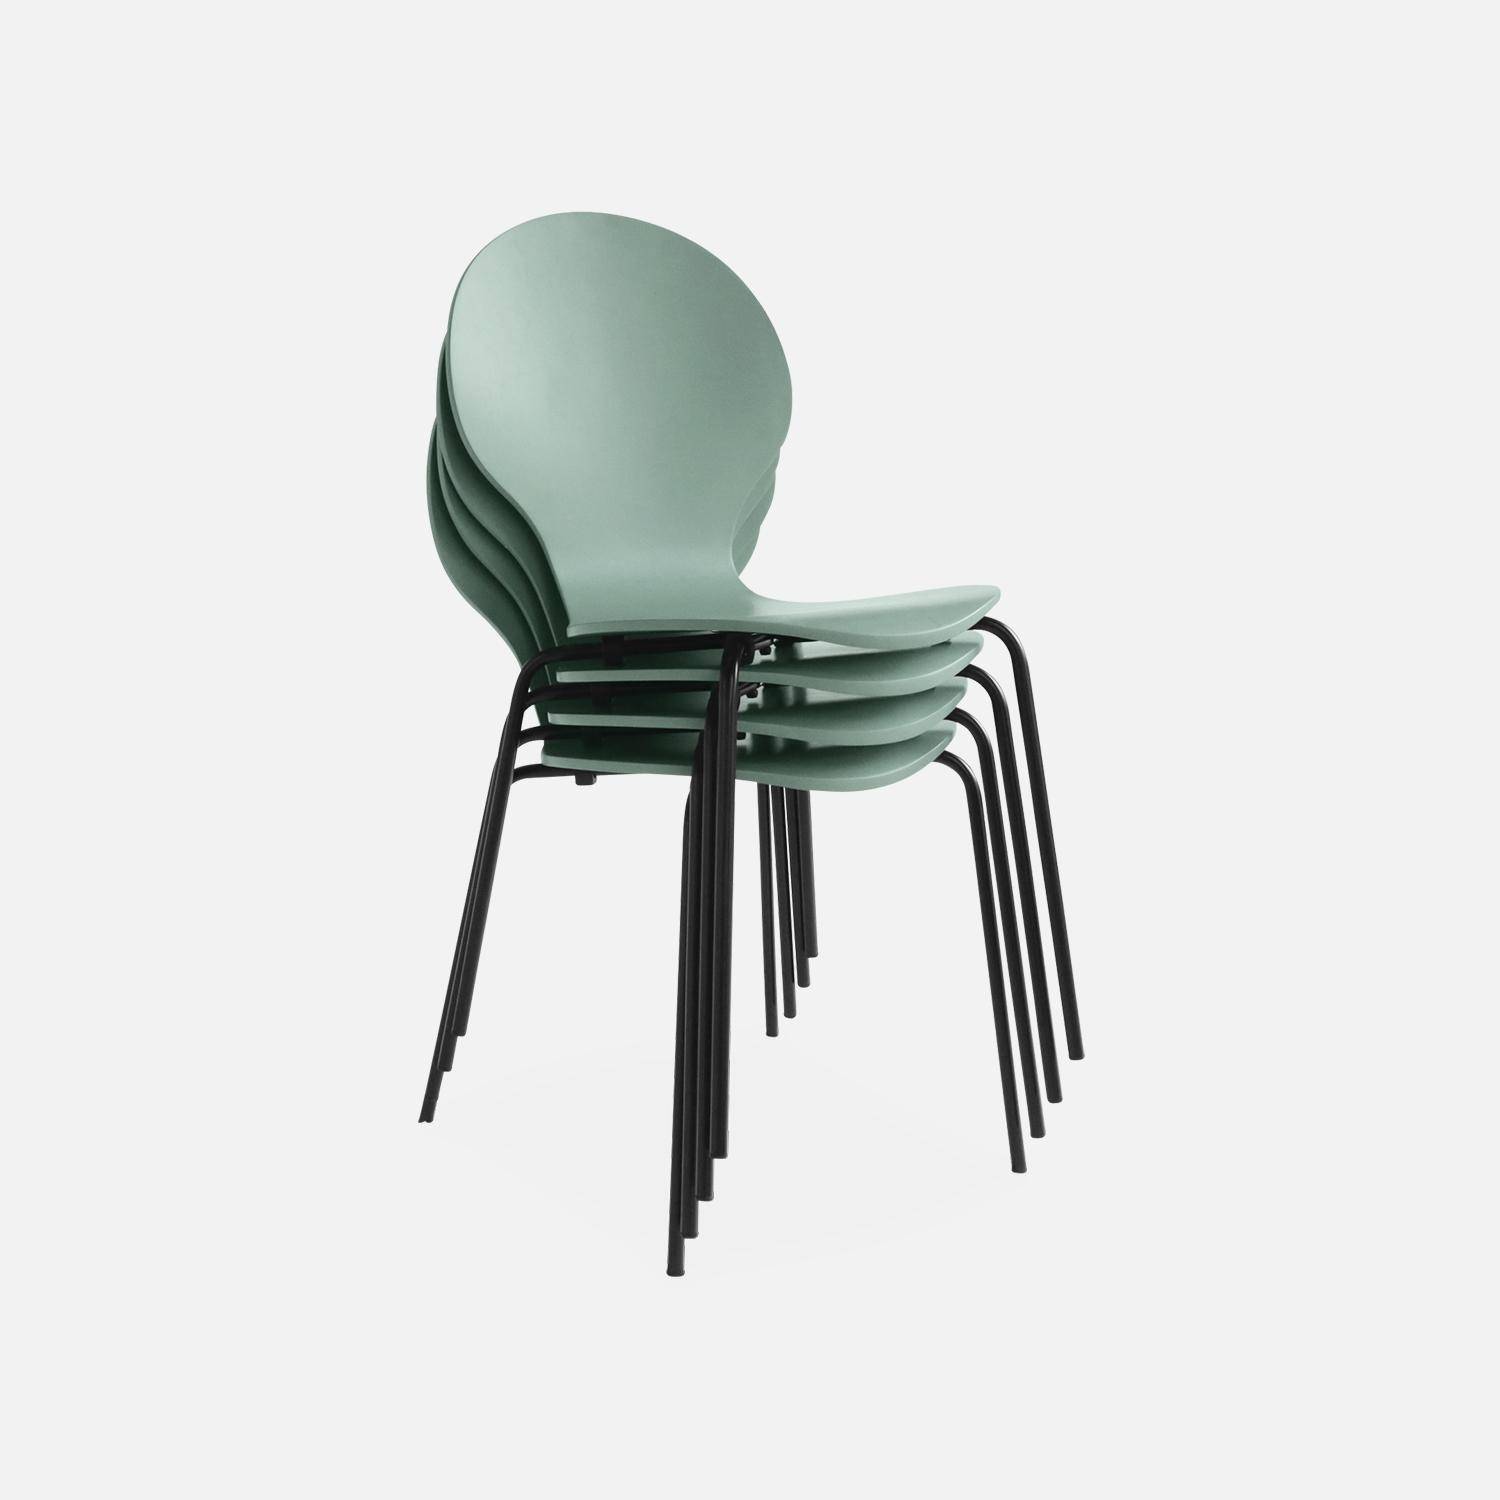 Juego de 4 sillas apilables retro verde celadón, madera de hevea y contrachapada, patas de acero, Naomi, A 43 x P 48 x Alt 87cm,sweeek,Photo6